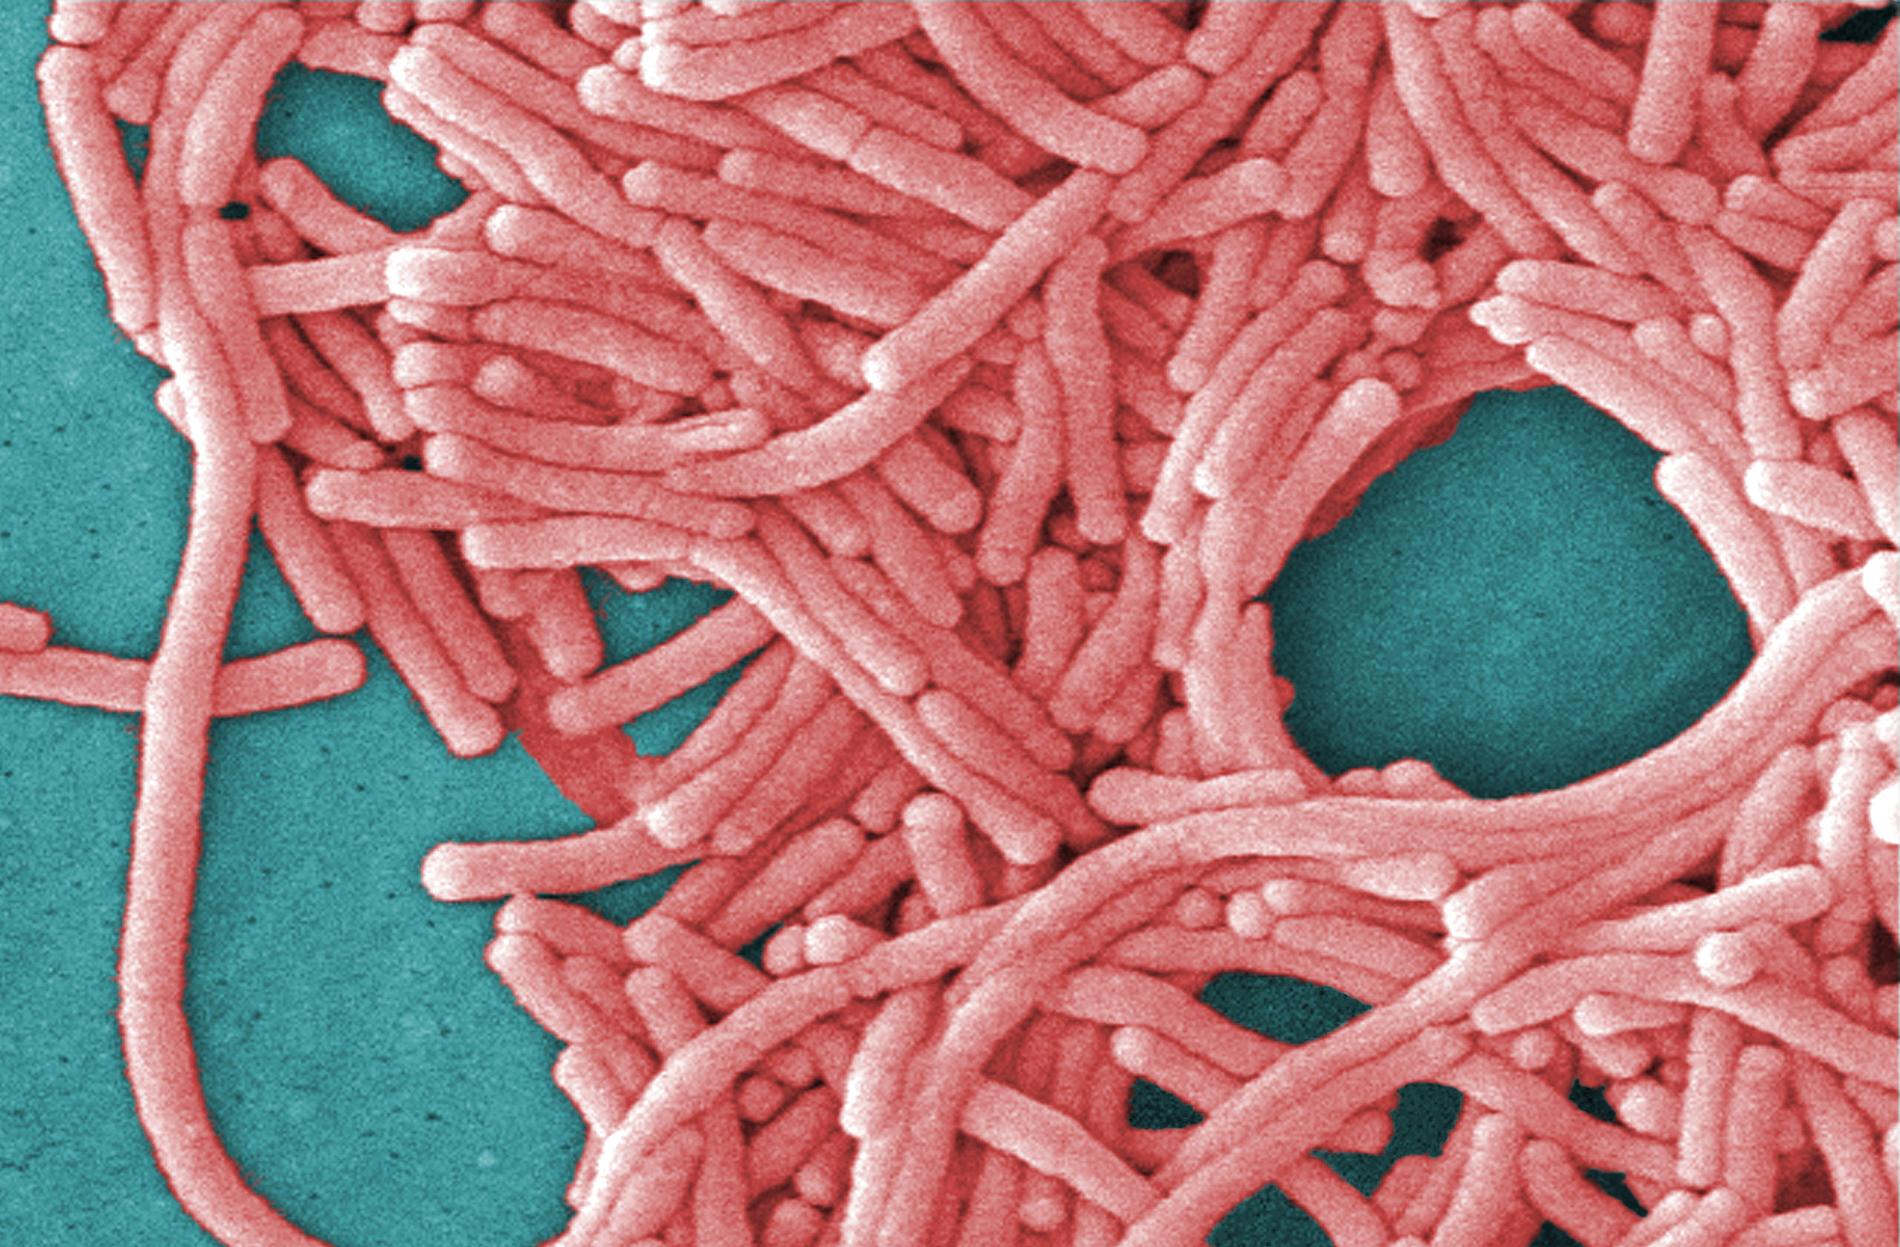 Legionellabakterien är vanligt förekommande i jord och vattensamlingar och kan orsaka allvarlig lunginflammation.